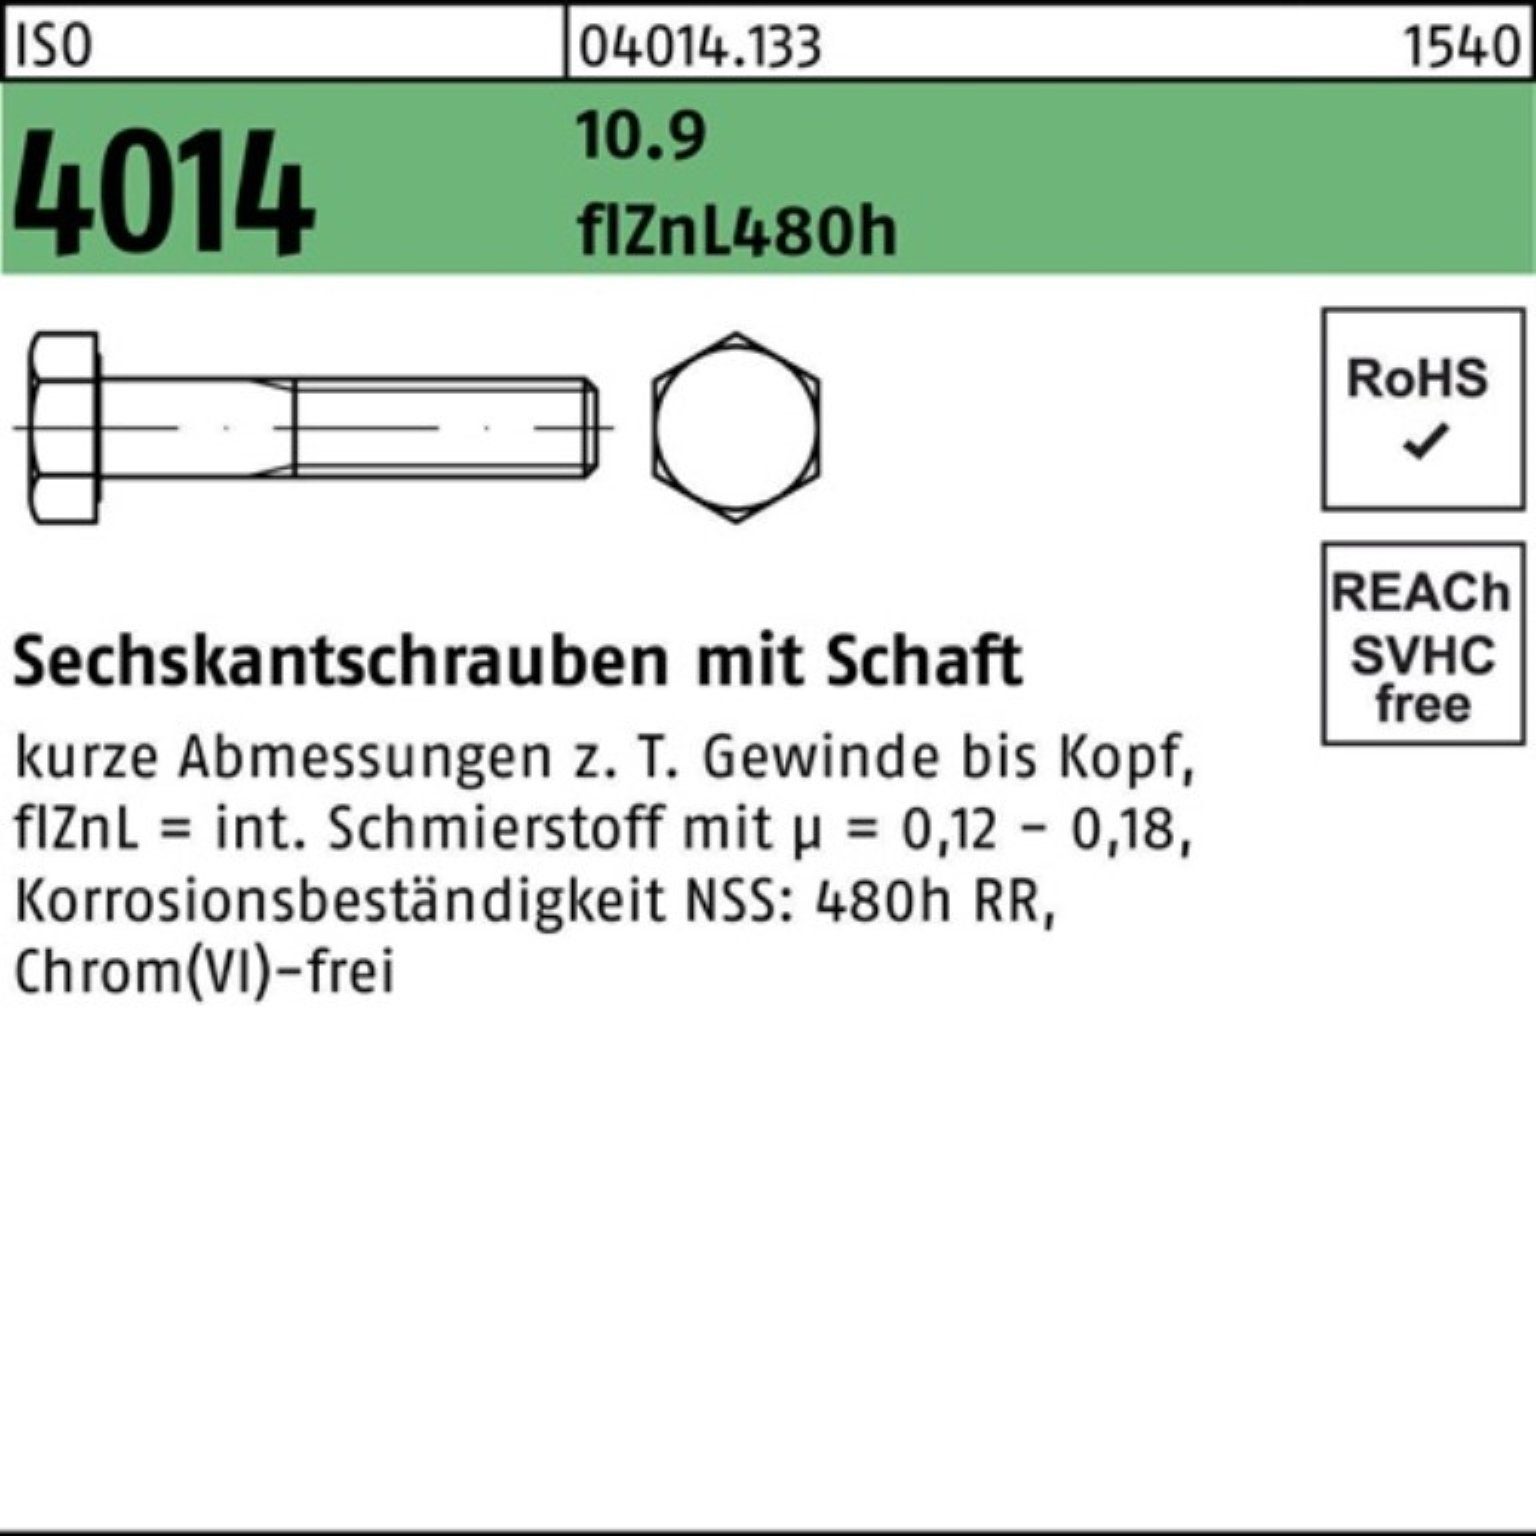 Bufab Sechskantschraube 100er Pack Sechskantschraube zinklamellen 10.9 ISO 60 Schaft 4014 M14x